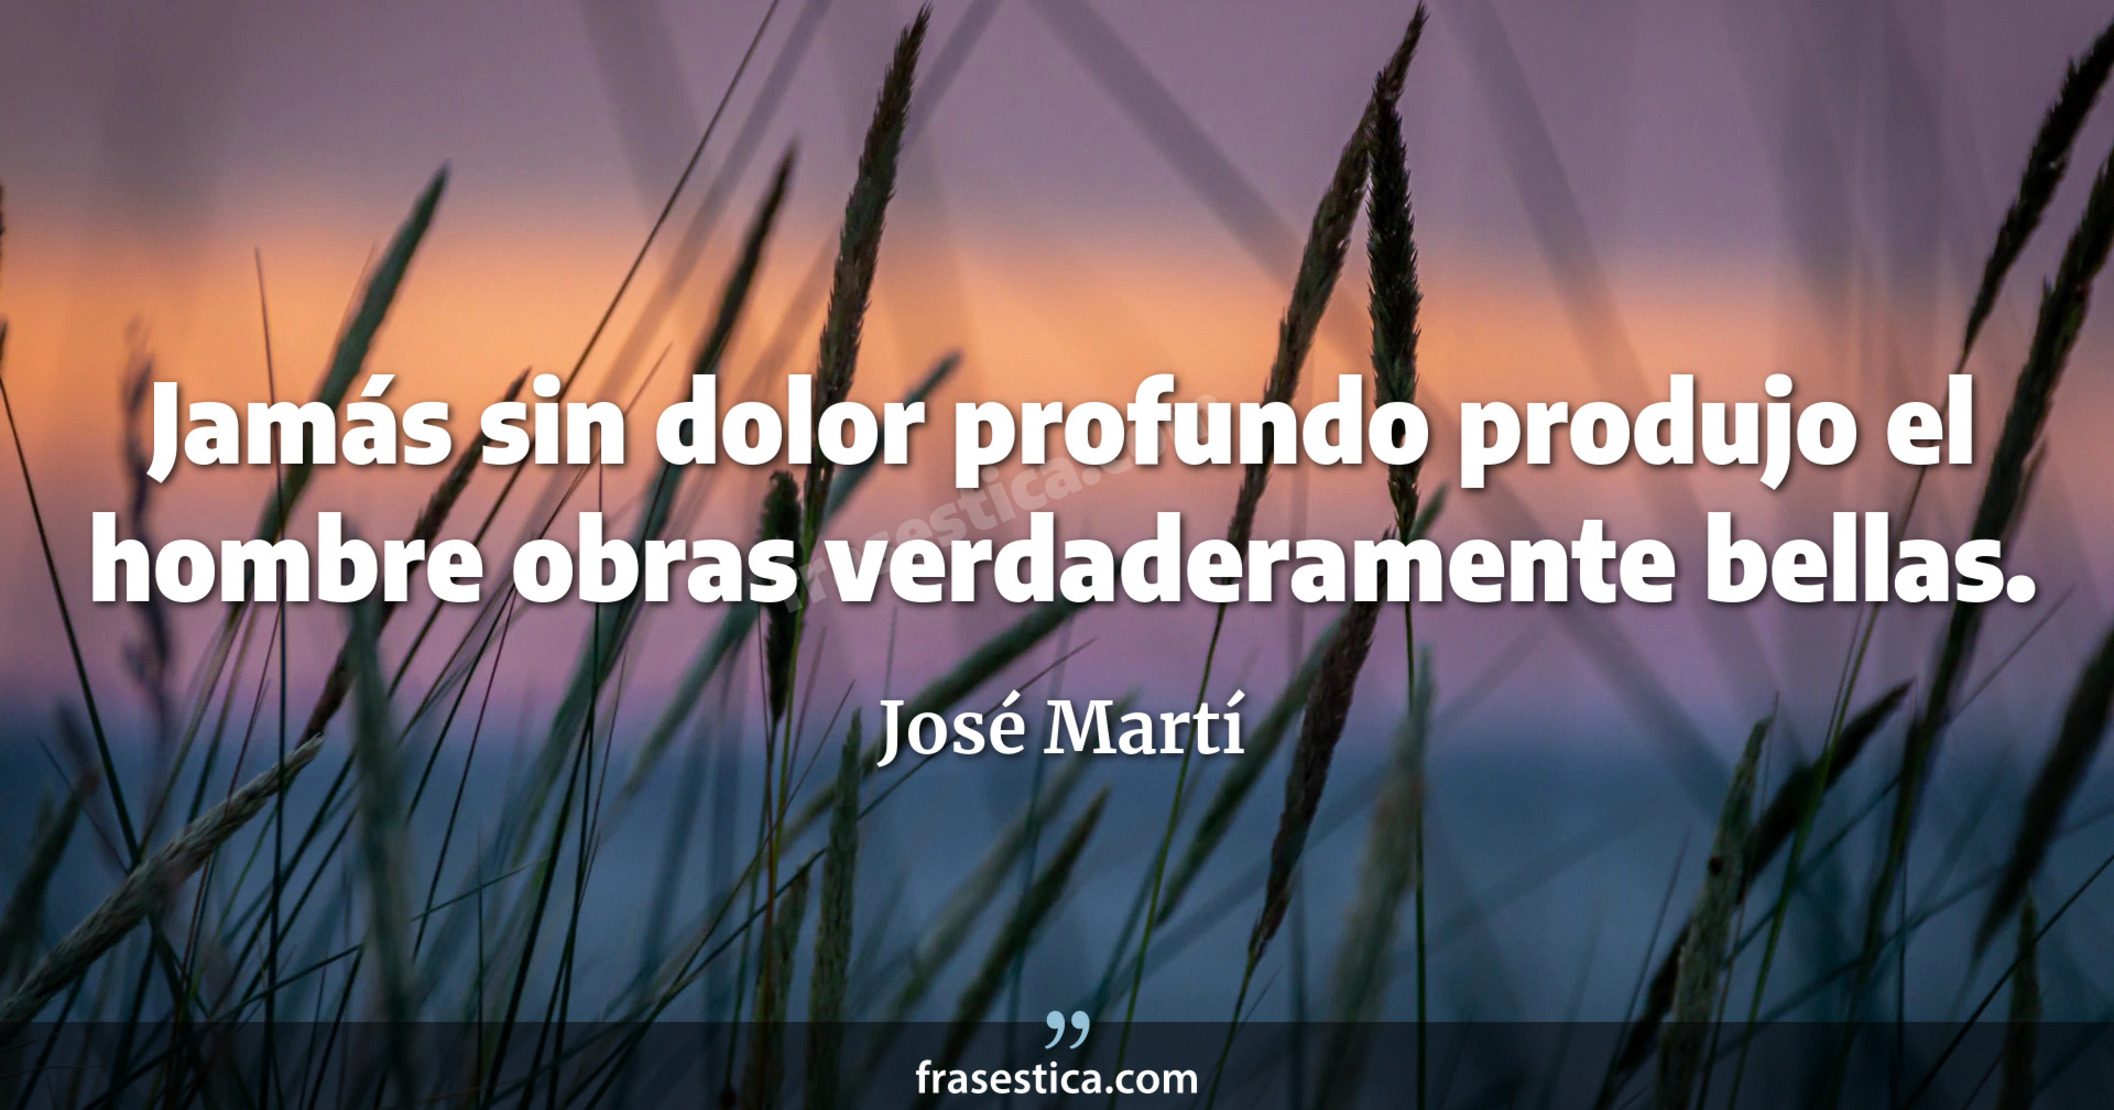 Jamás sin dolor profundo produjo el hombre obras verdaderamente bellas. - José Martí